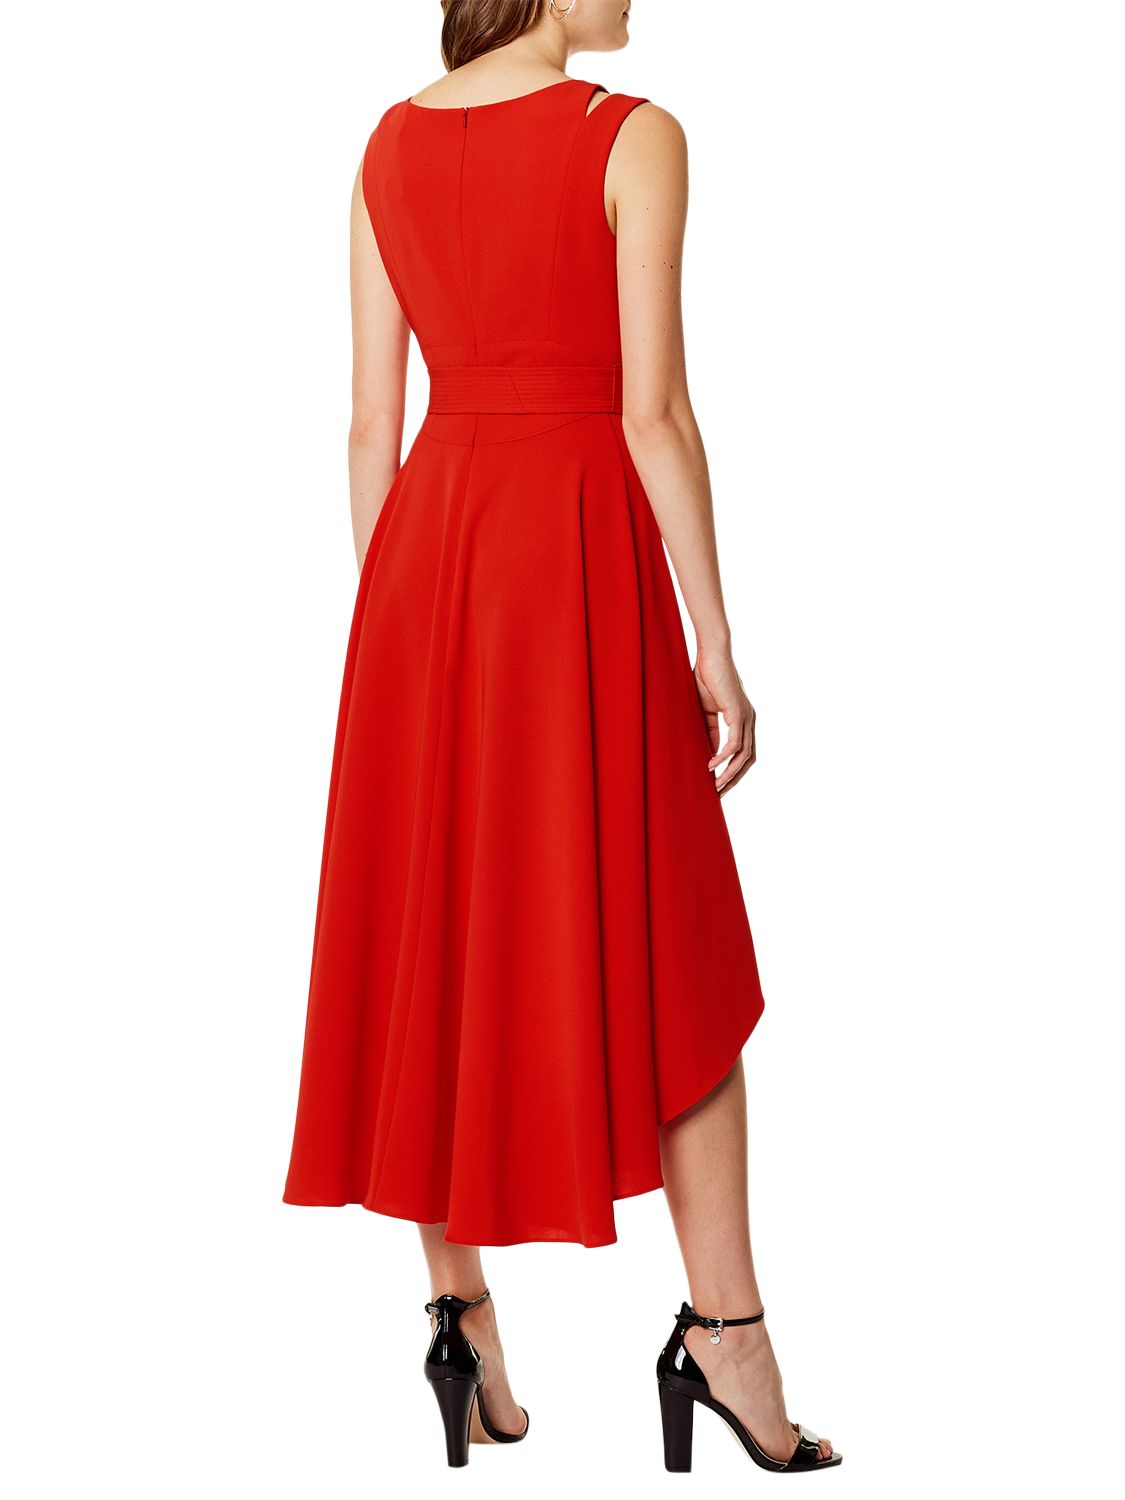 Karen Millen Asymmetric Belted Dress, Red Claret, 6